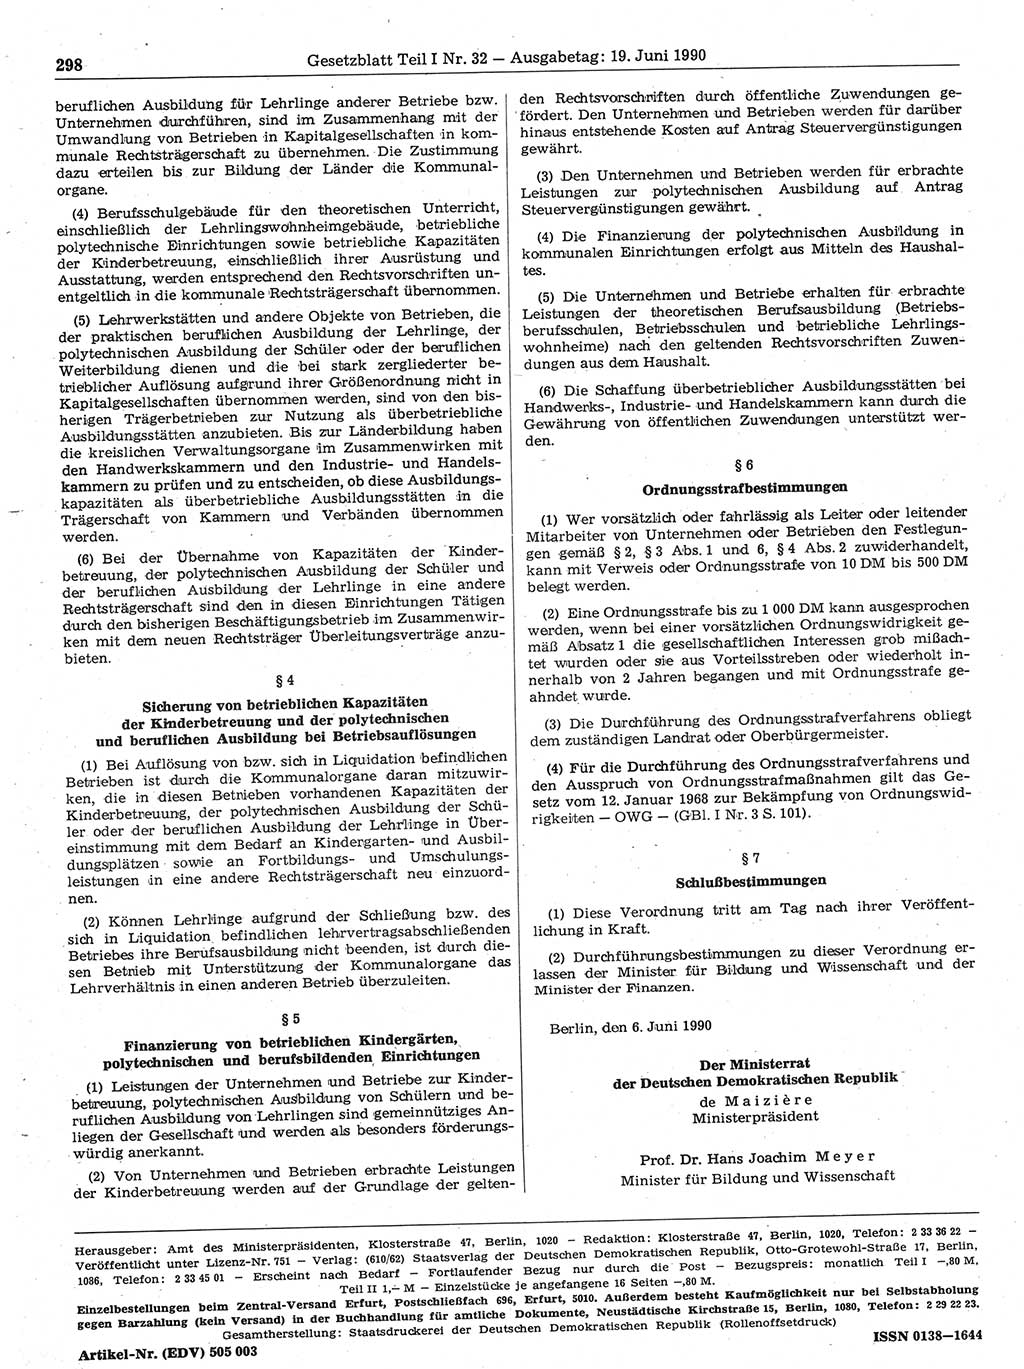 Gesetzblatt (GBl.) der Deutschen Demokratischen Republik (DDR) Teil Ⅰ 1990, Seite 298 (GBl. DDR Ⅰ 1990, S. 298)